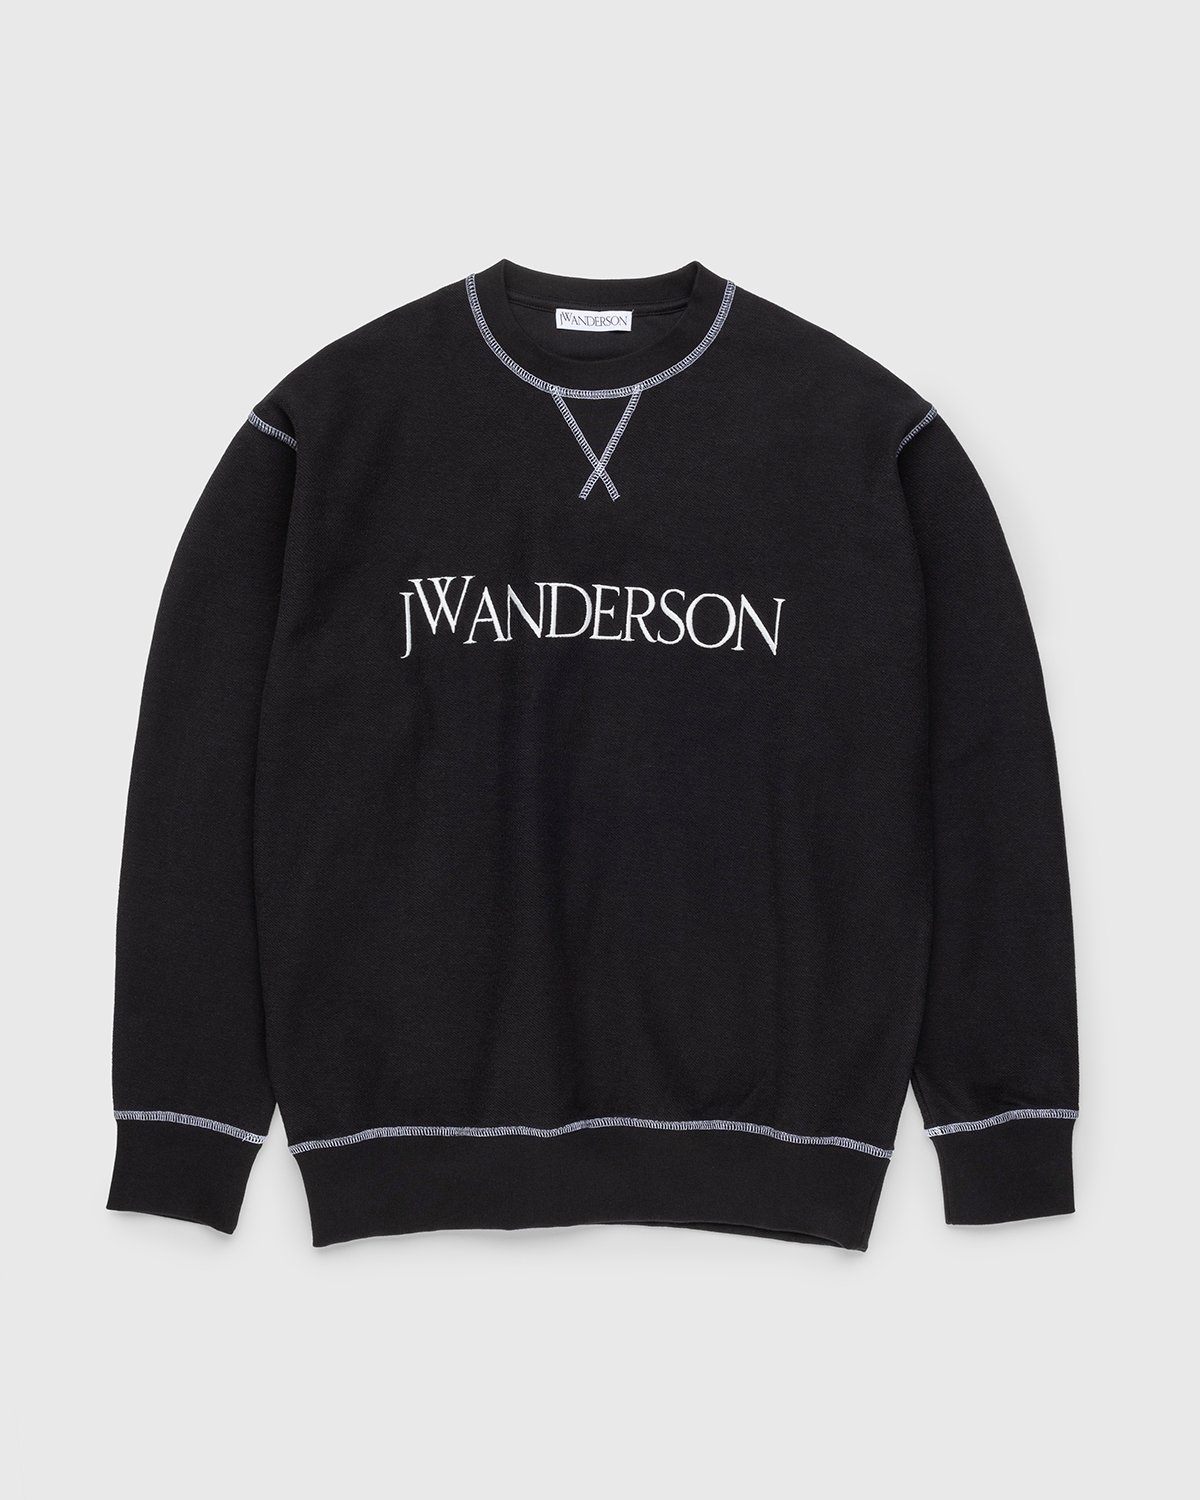 J.W. Anderson – Inside Out Contrast Sweatshirt Black - Sweats - Black - Image 1